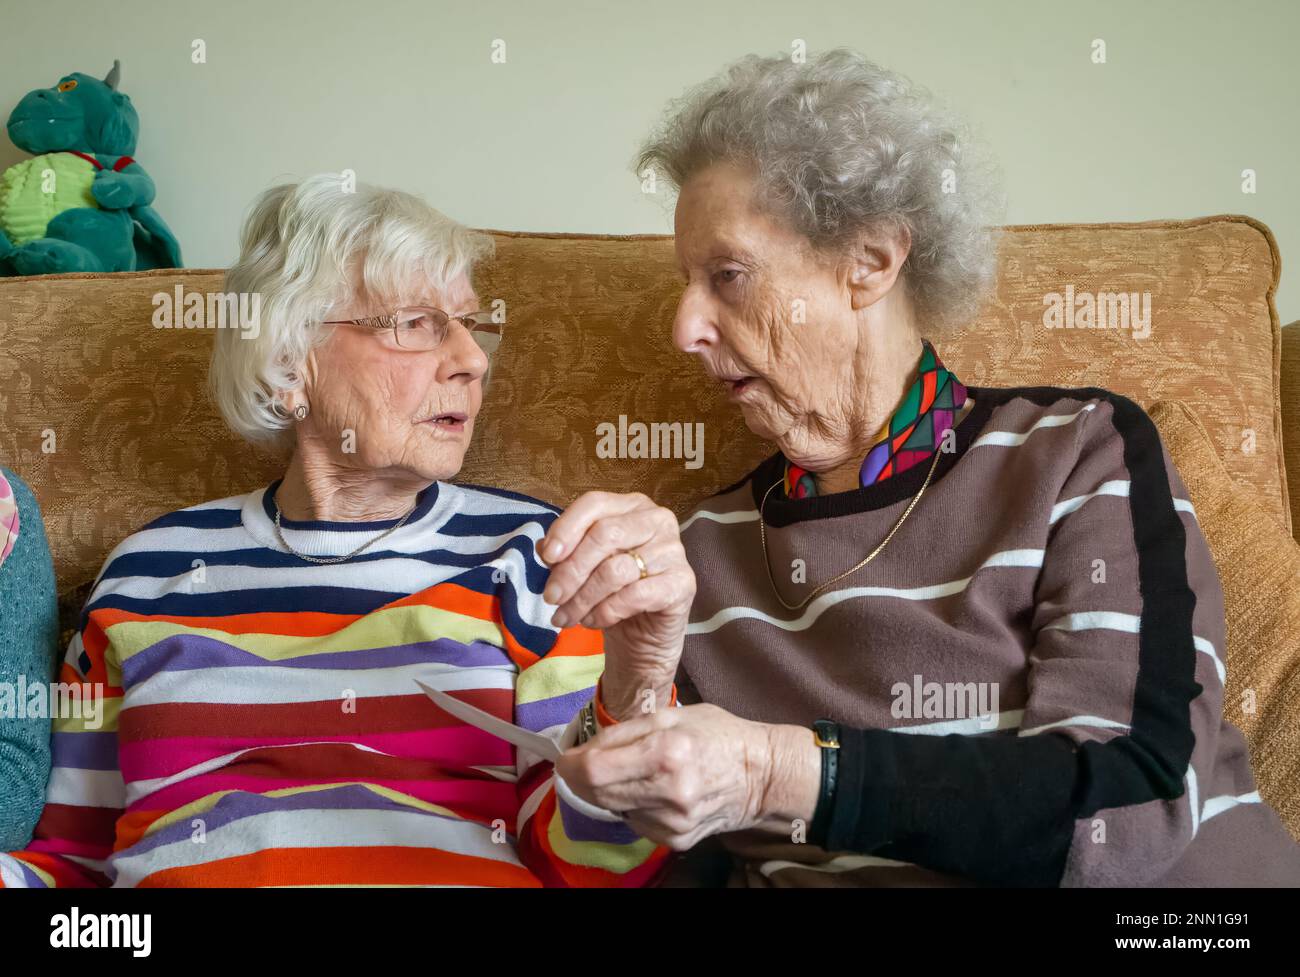 Zwei ältere Frauen im Alter von 90s Jahren, die lebenslange Freunde sind, sitzen zusammen, schauen sich ein Foto an und plaudern über die alten Zeiten. Stockfoto